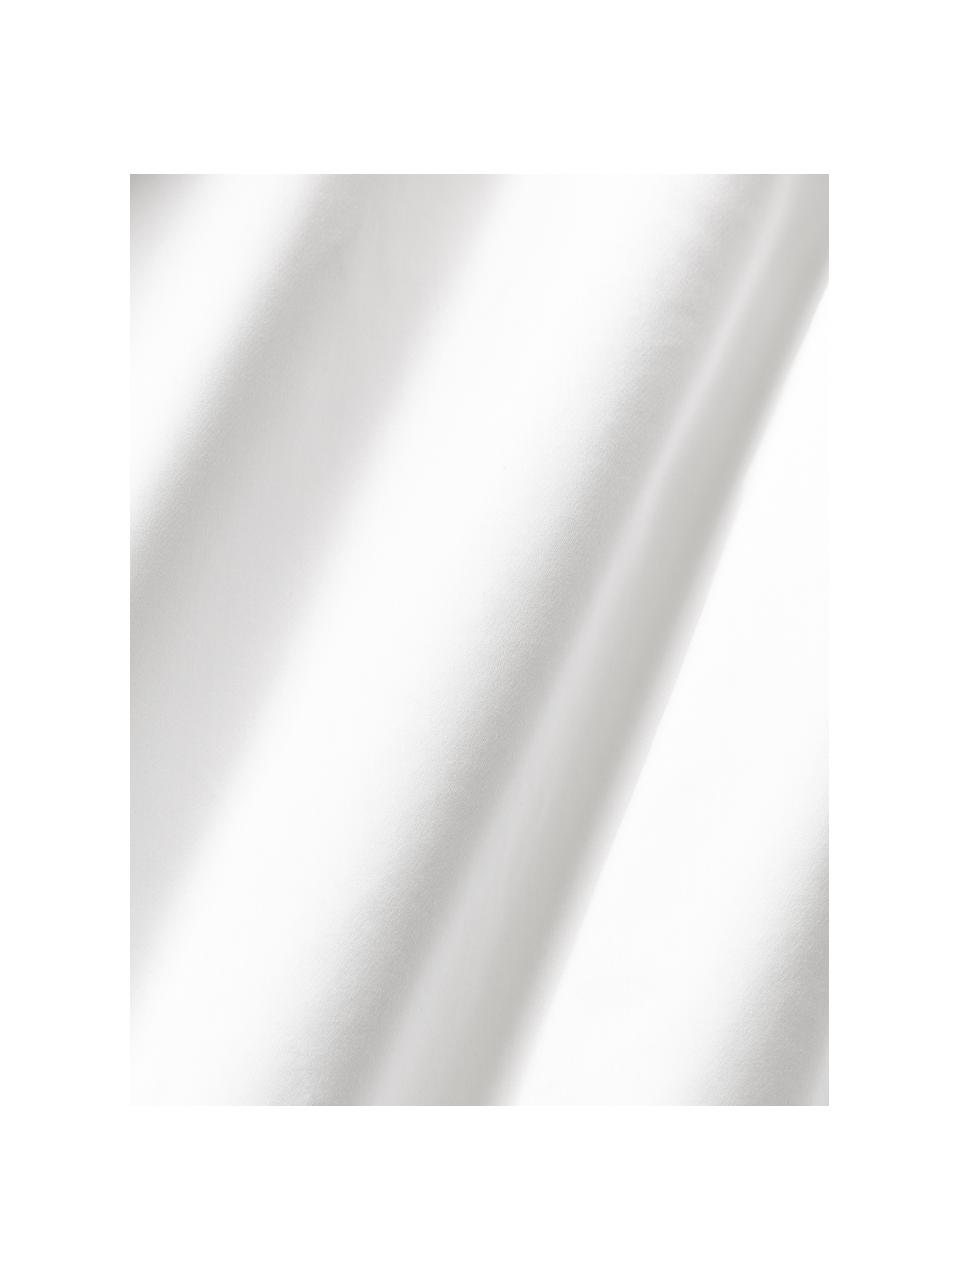 Sábana bajera de satén Premium, Blanco, Cama 90 cm (90 x 200 cm)